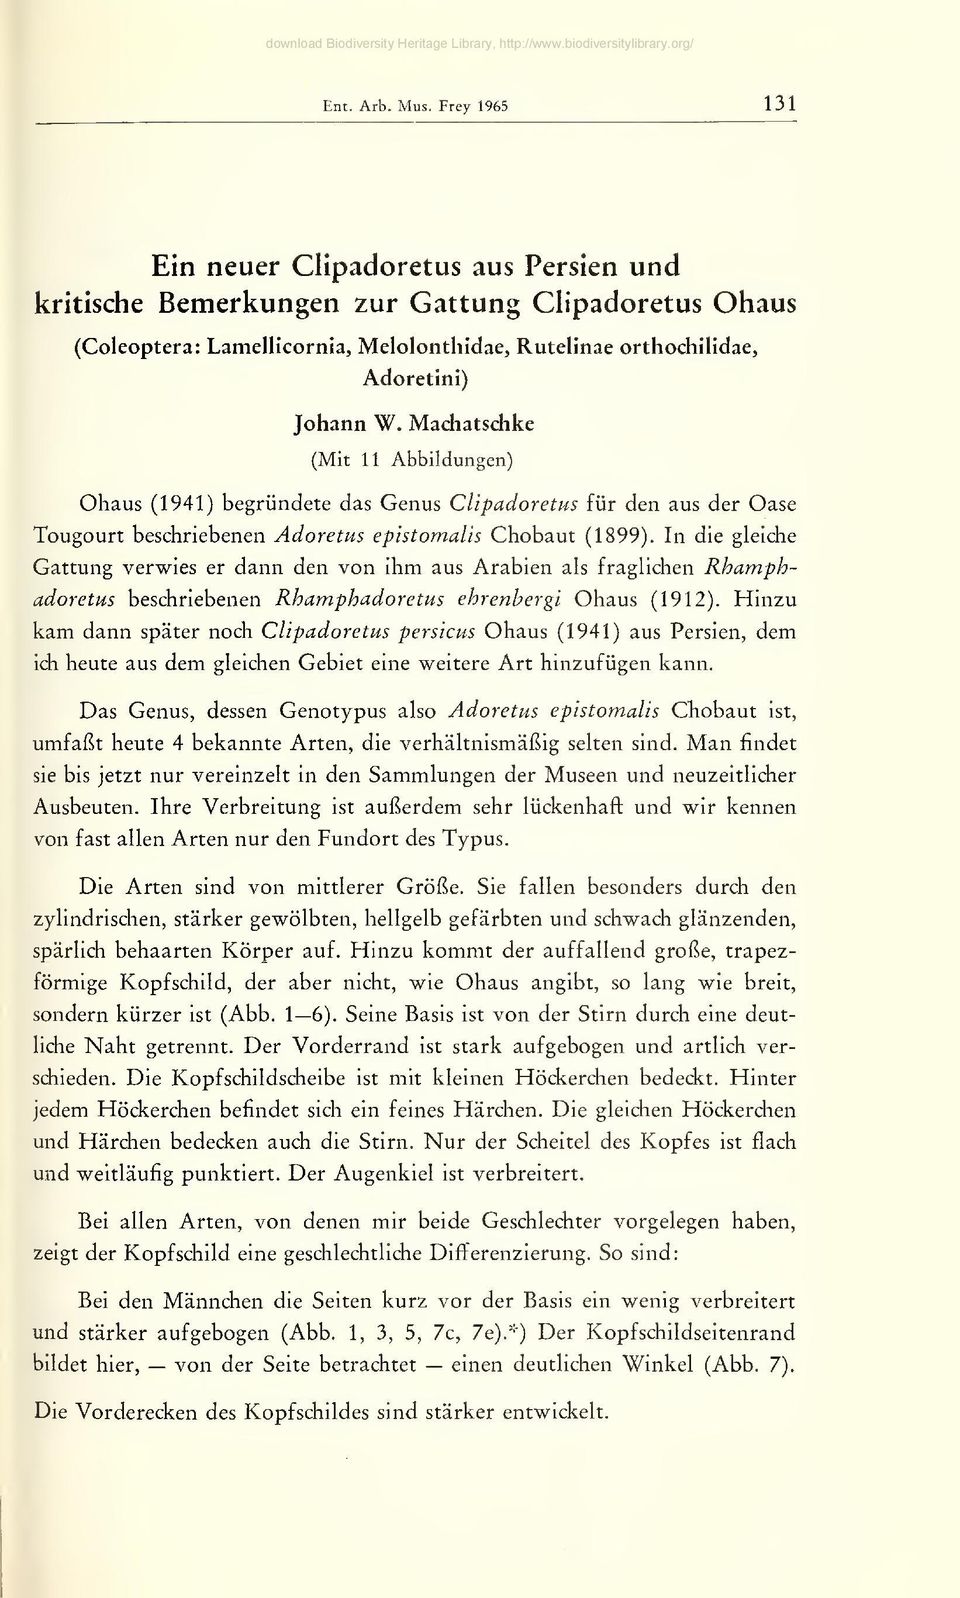 Machatschke (Mit 11 Abbildungen) Obaus (1941) begründete das Genus Clipadoretus für den aus der Oase Tougourt beschriebenen Adoretus epistomalis Chobaut (1899).